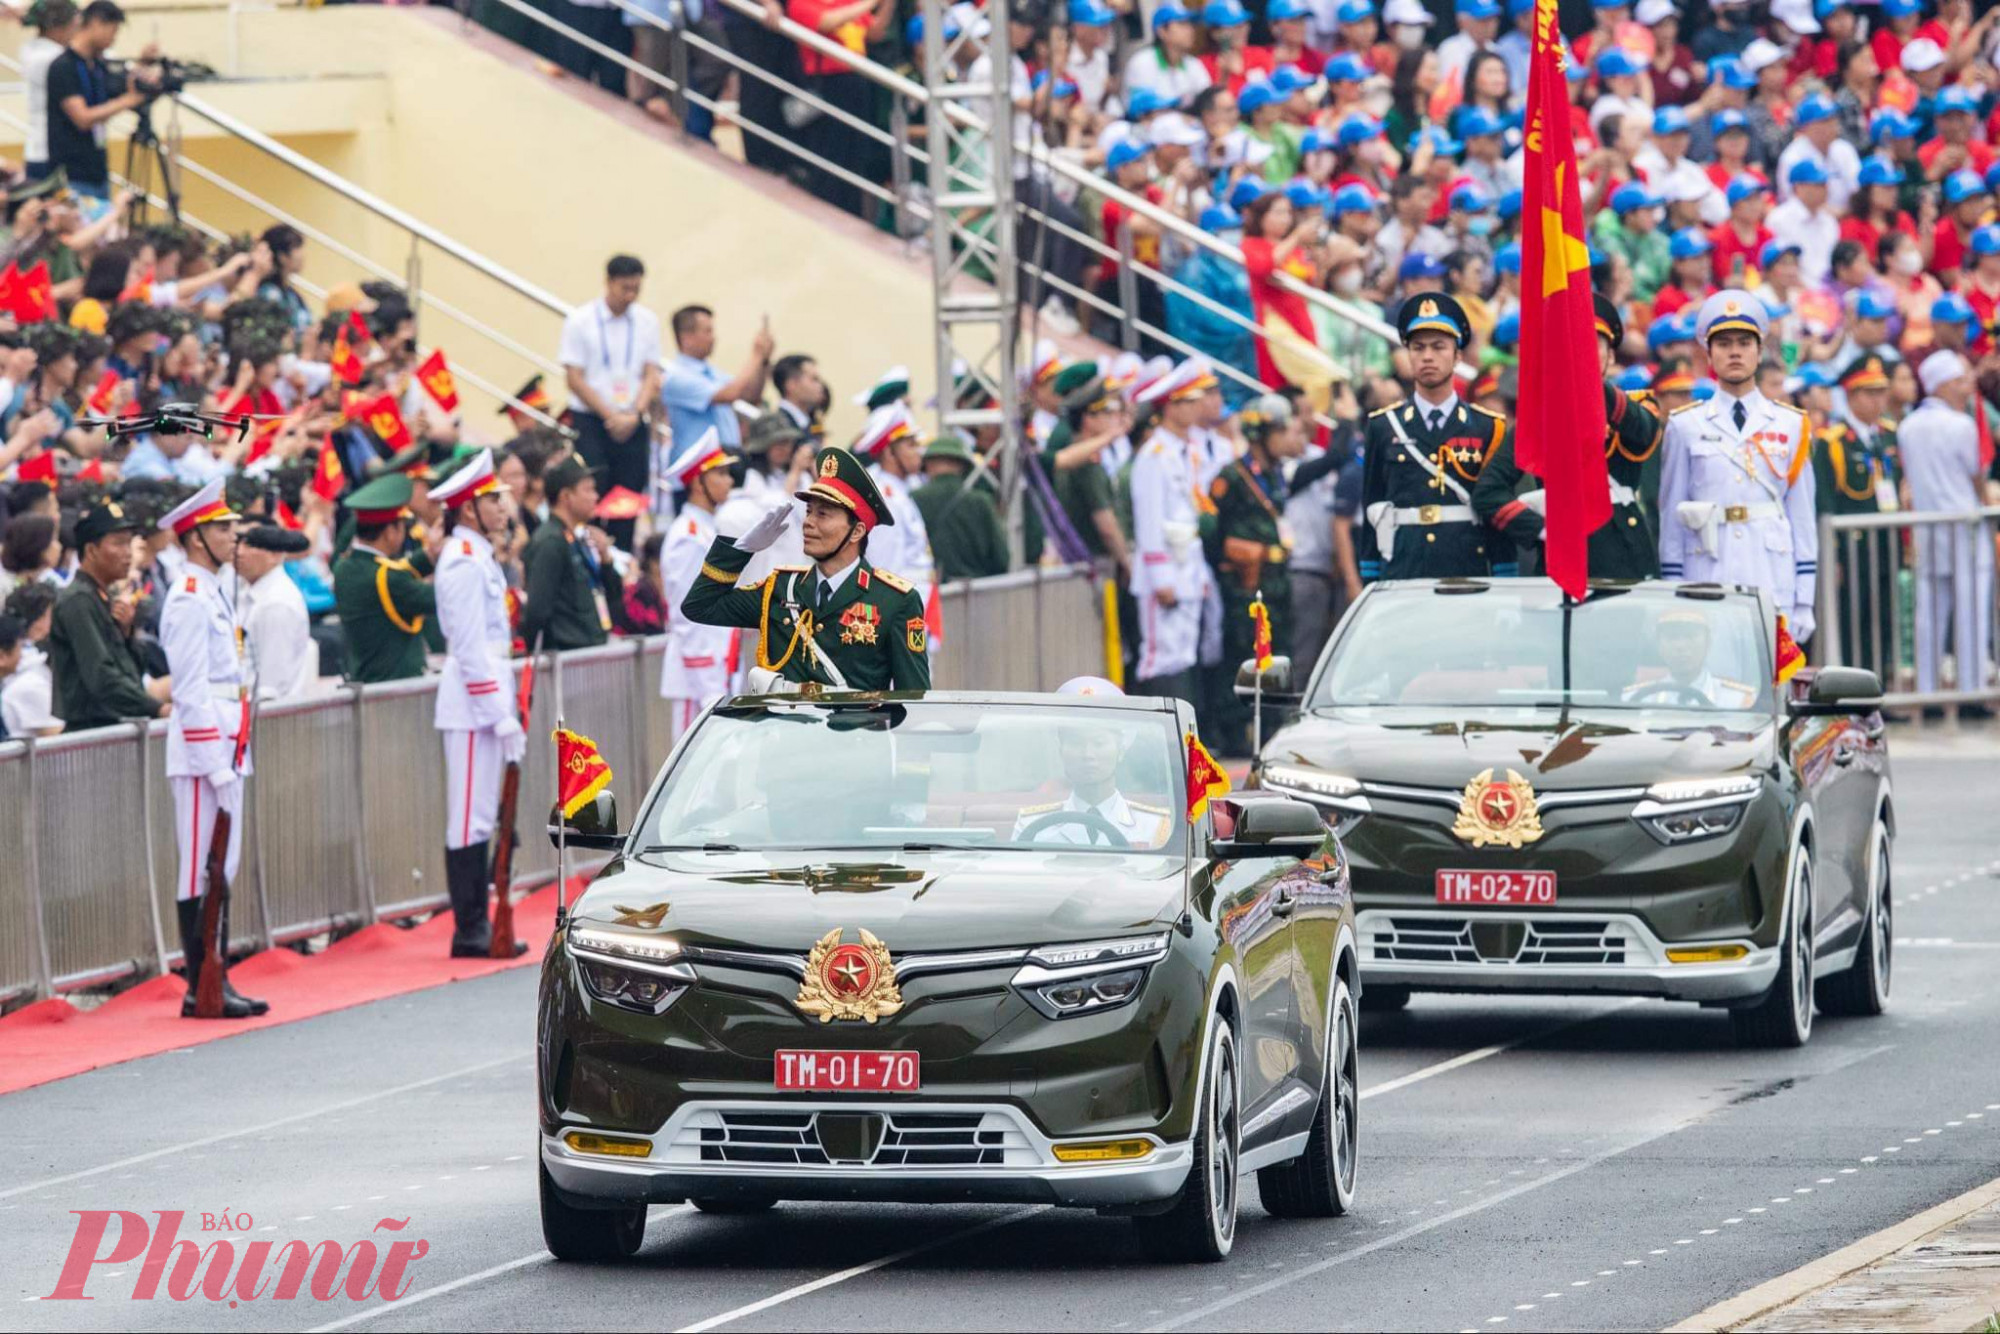 Khối Quân kỳ do đồng chí Trung tướng Nguyễn Trọng Bình, Phó Tổng tham mưu trưởng Quân đội nhân dân Việt Nam chỉ huy, dẫn đầu các khối đại diện cho lực lượng Quân đội nhân dân và Dân quân tự vệ